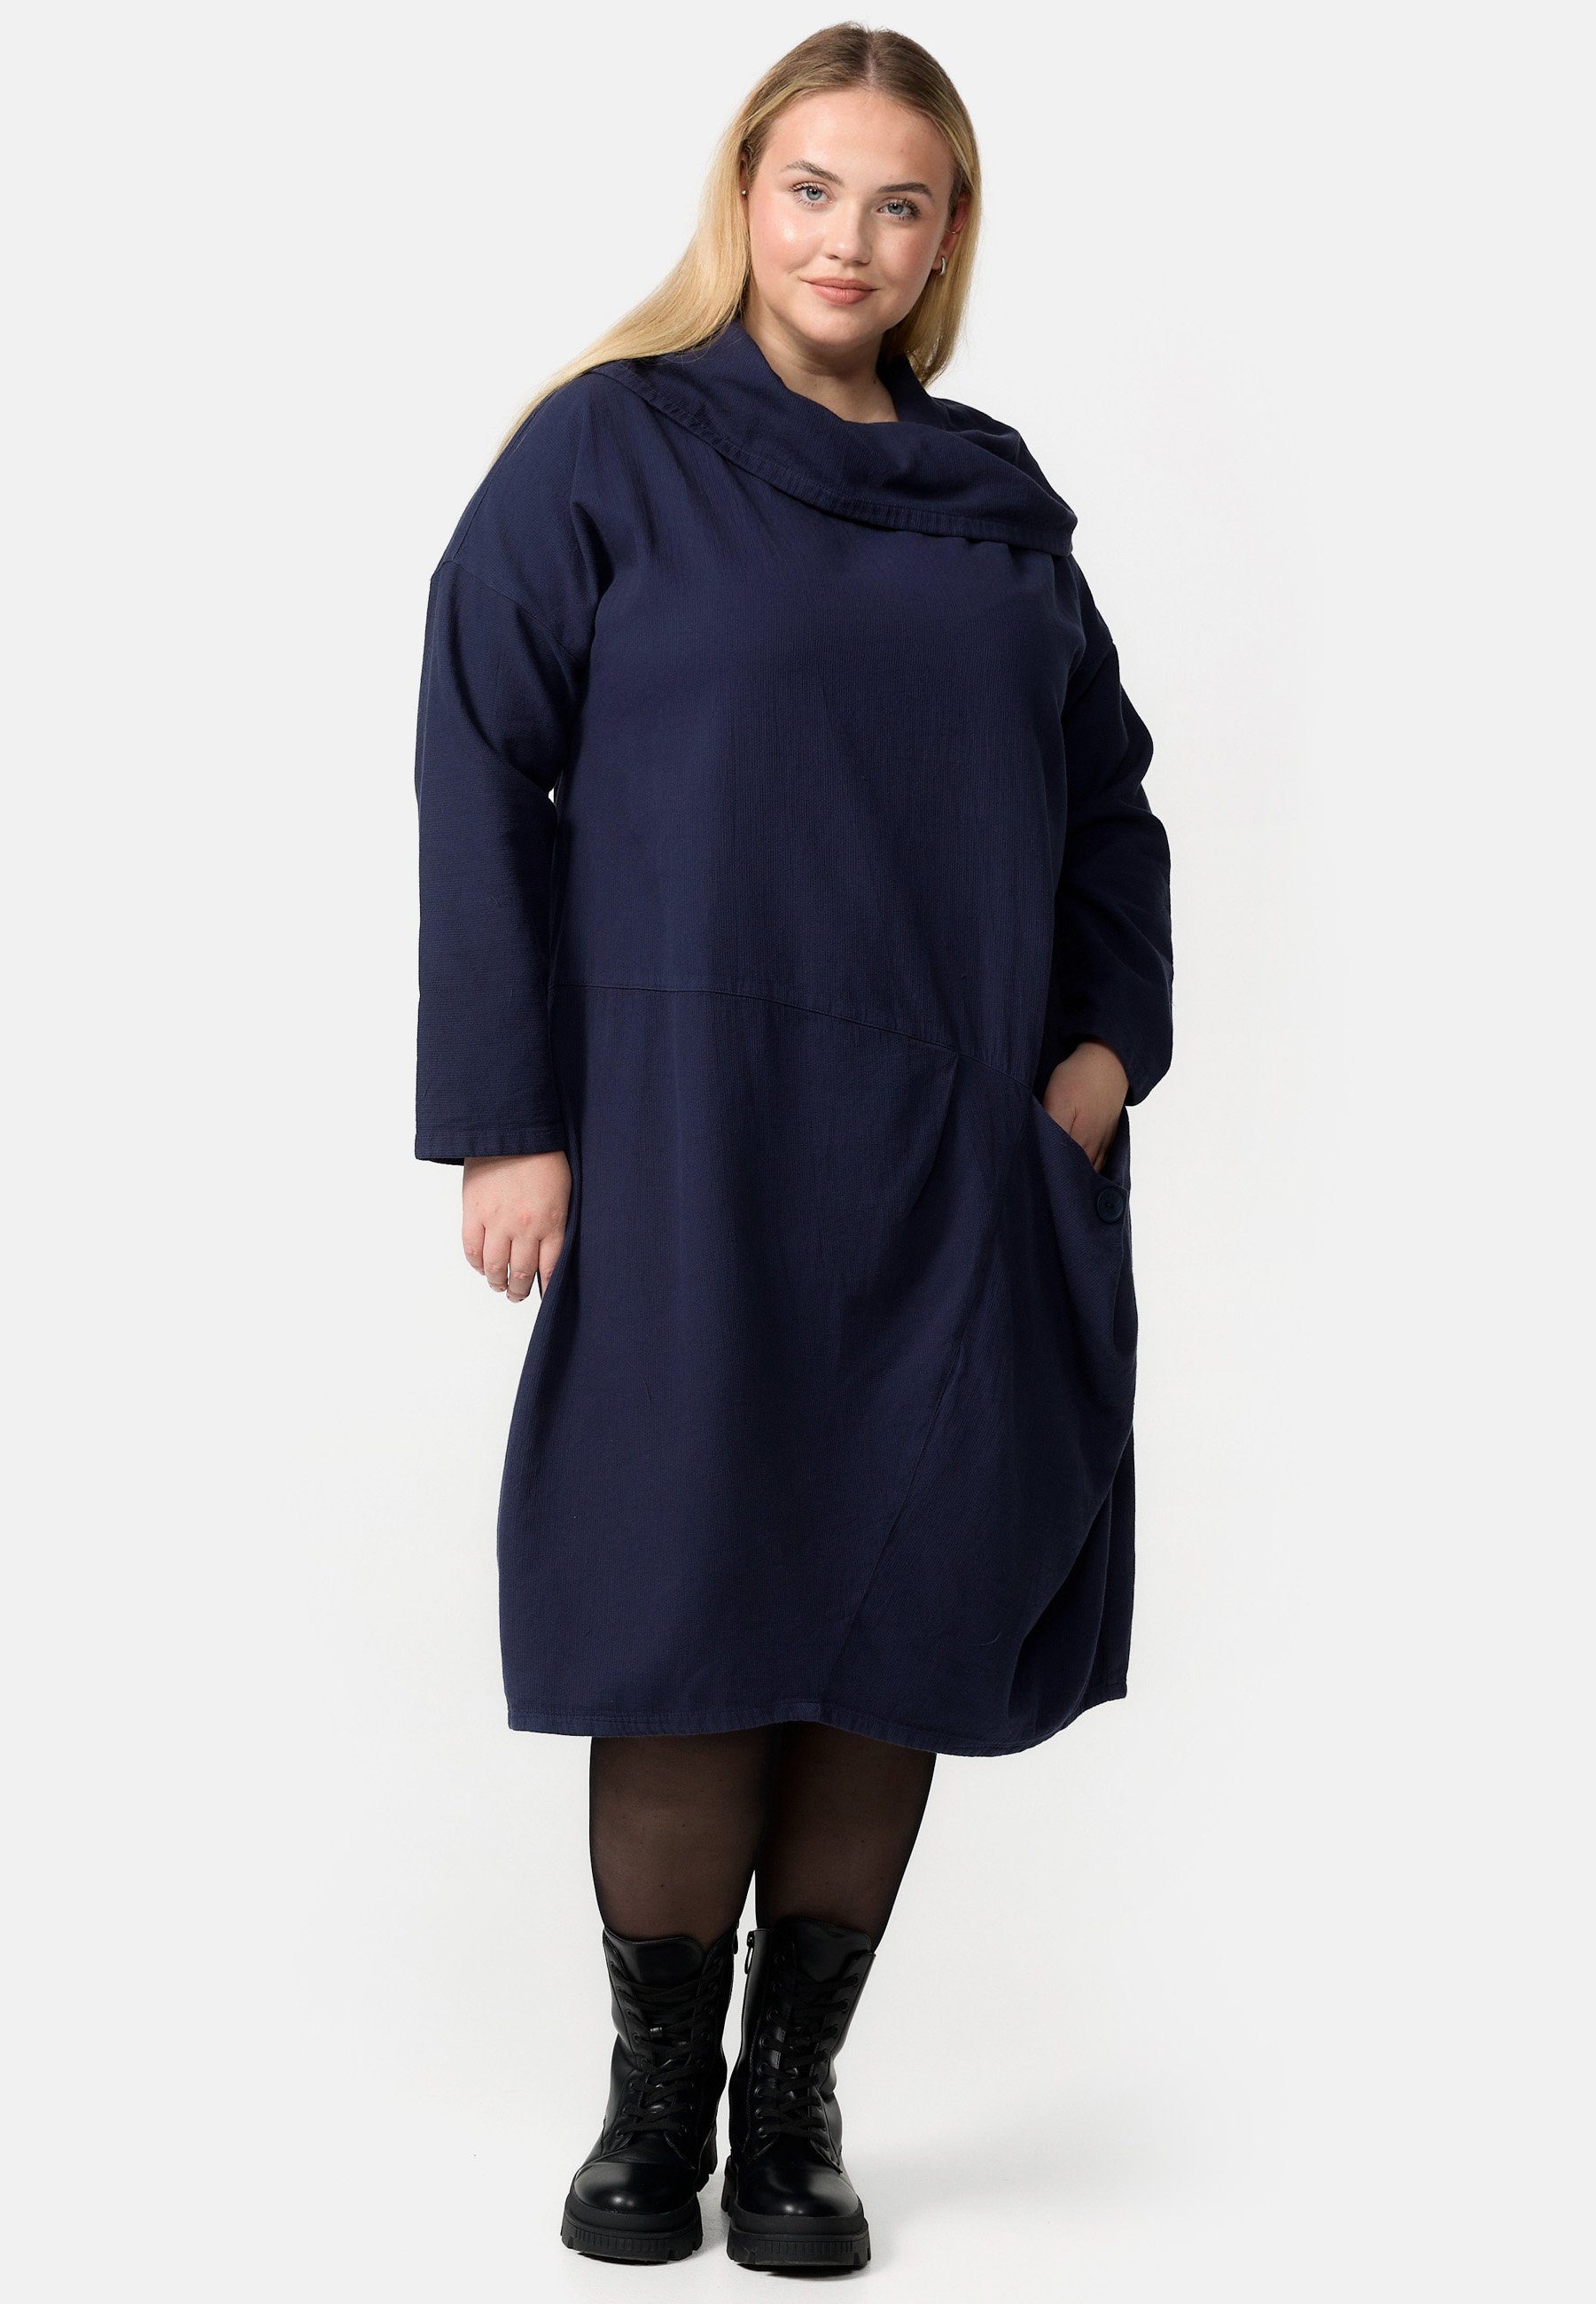 Kekoo A-Linien-Kleid aus in A-Linie 'Sienna' Cord-Kleid Baumwolle 100% Navy